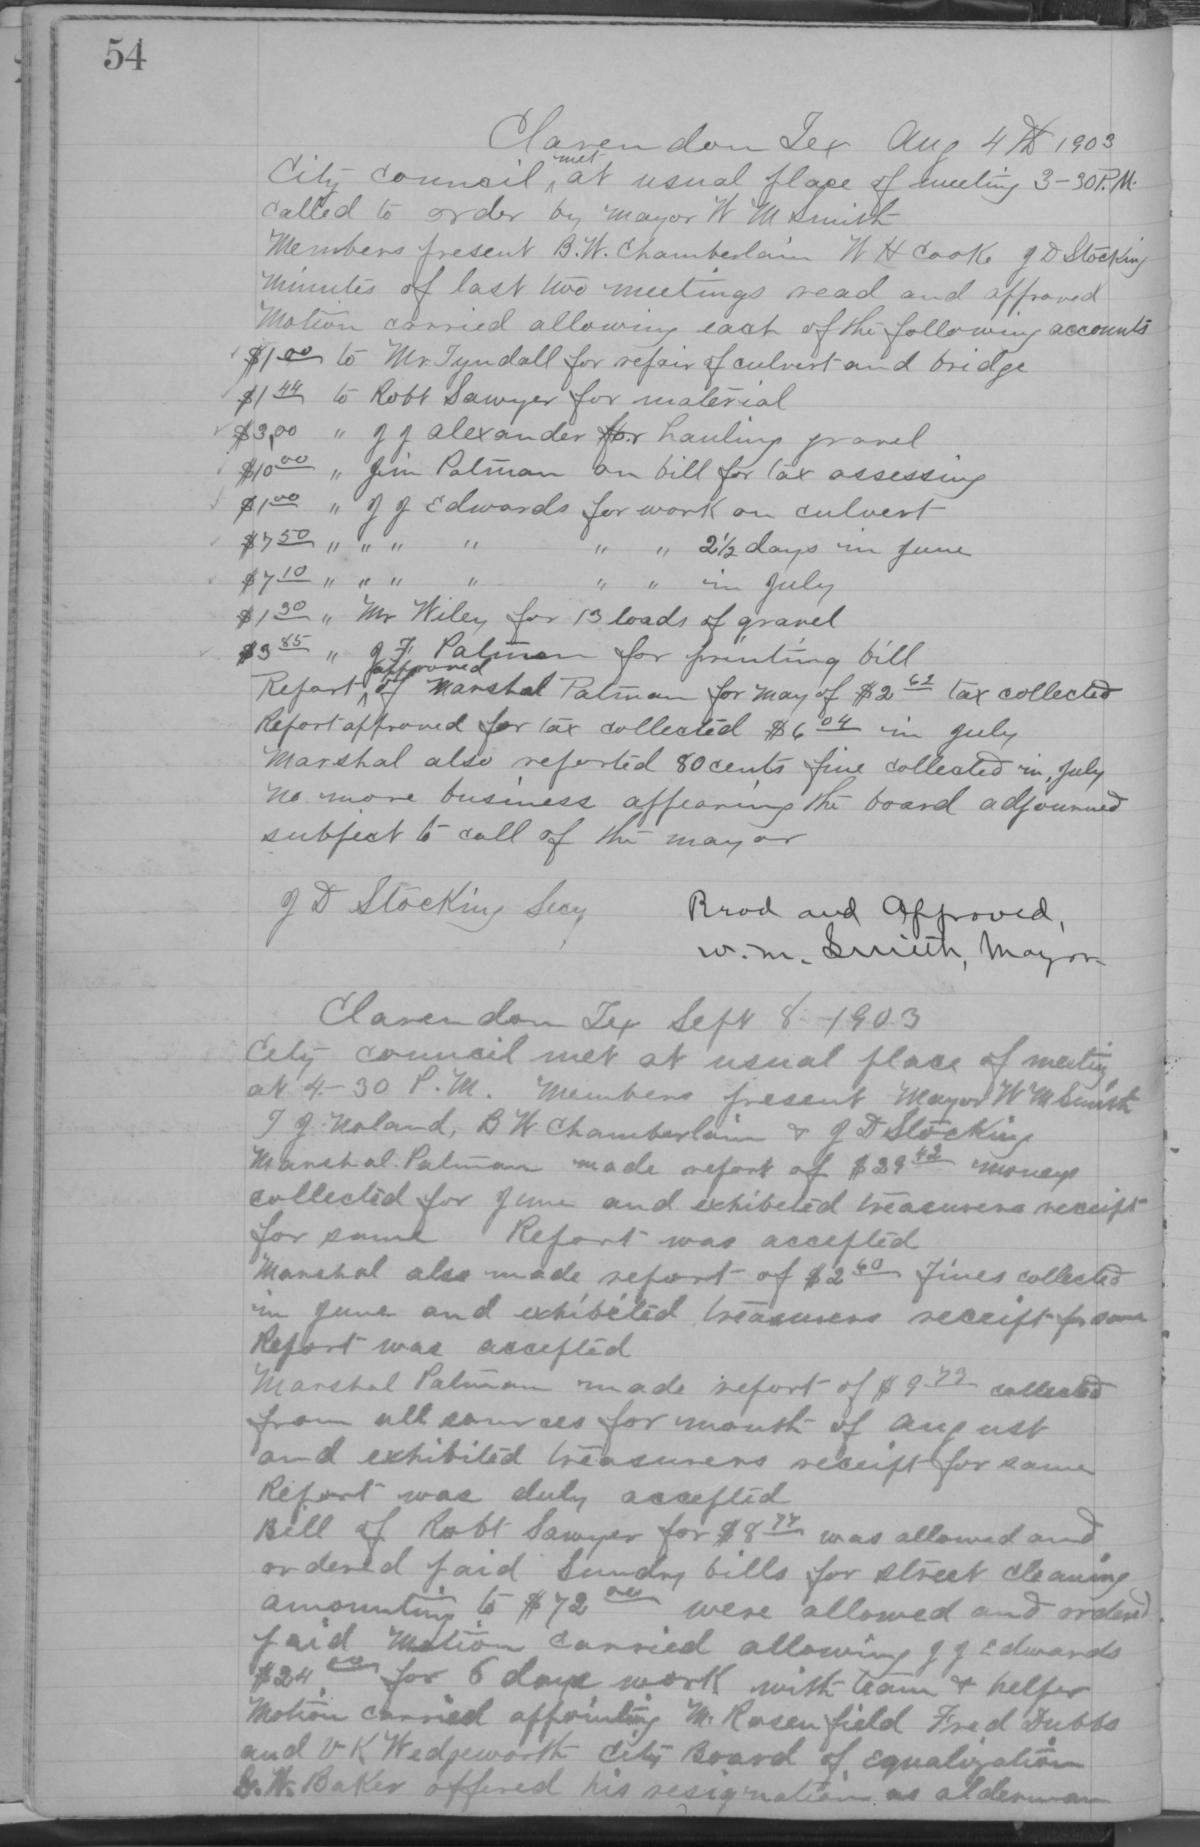 [City of Clarendon Ledger: Minutes for September 10, 1901- April 19, 1917]
                                                
                                                    54
                                                